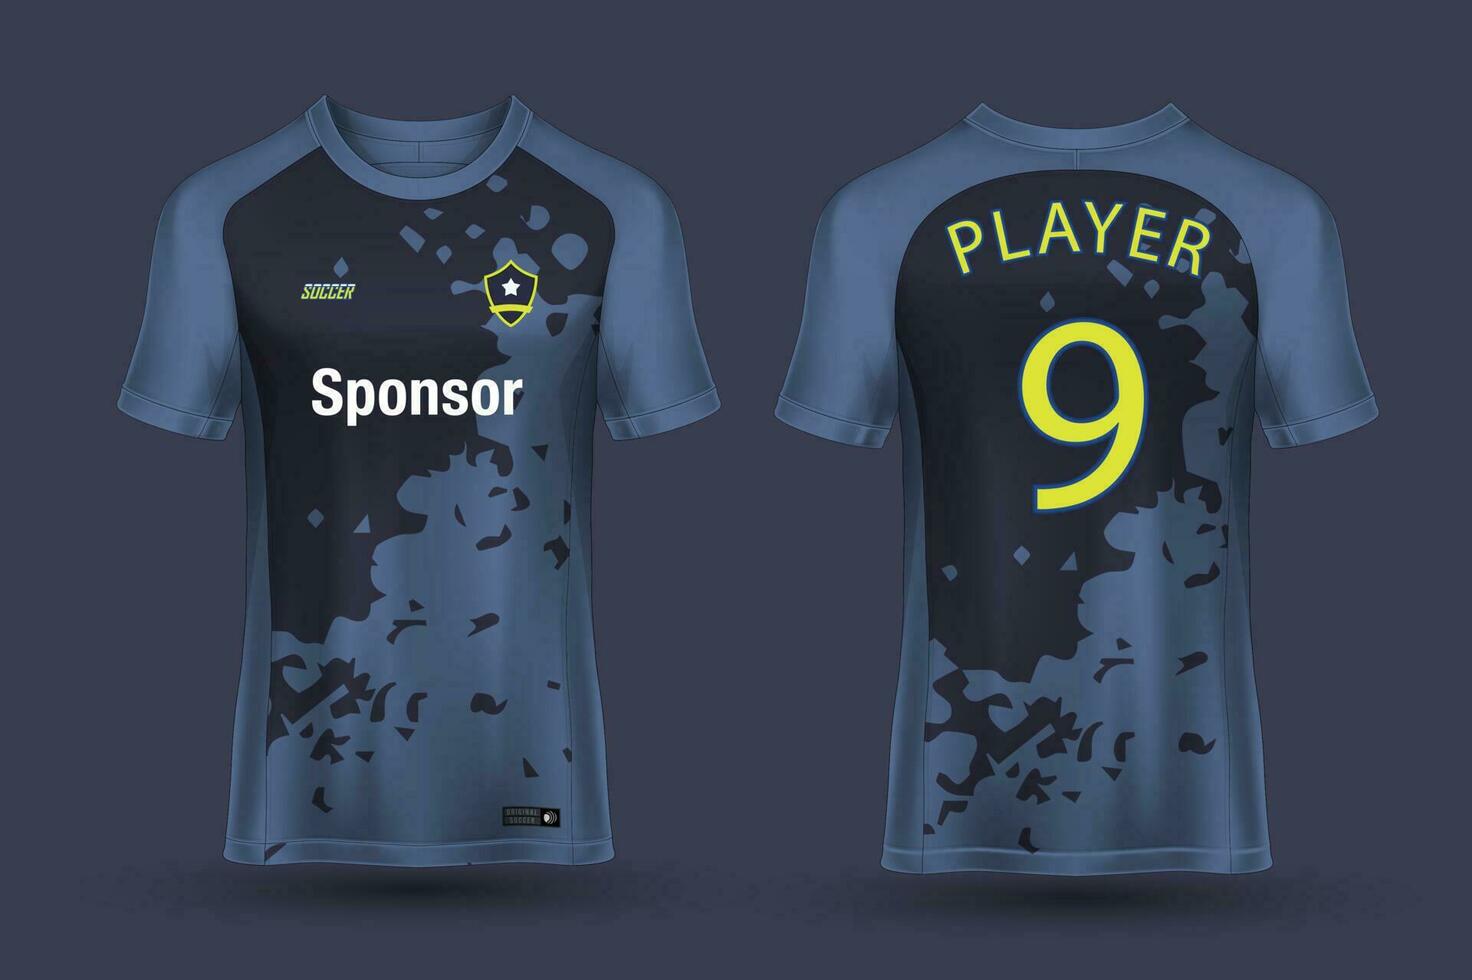 soccer jersey design for sublimation, sport t shirt design vector